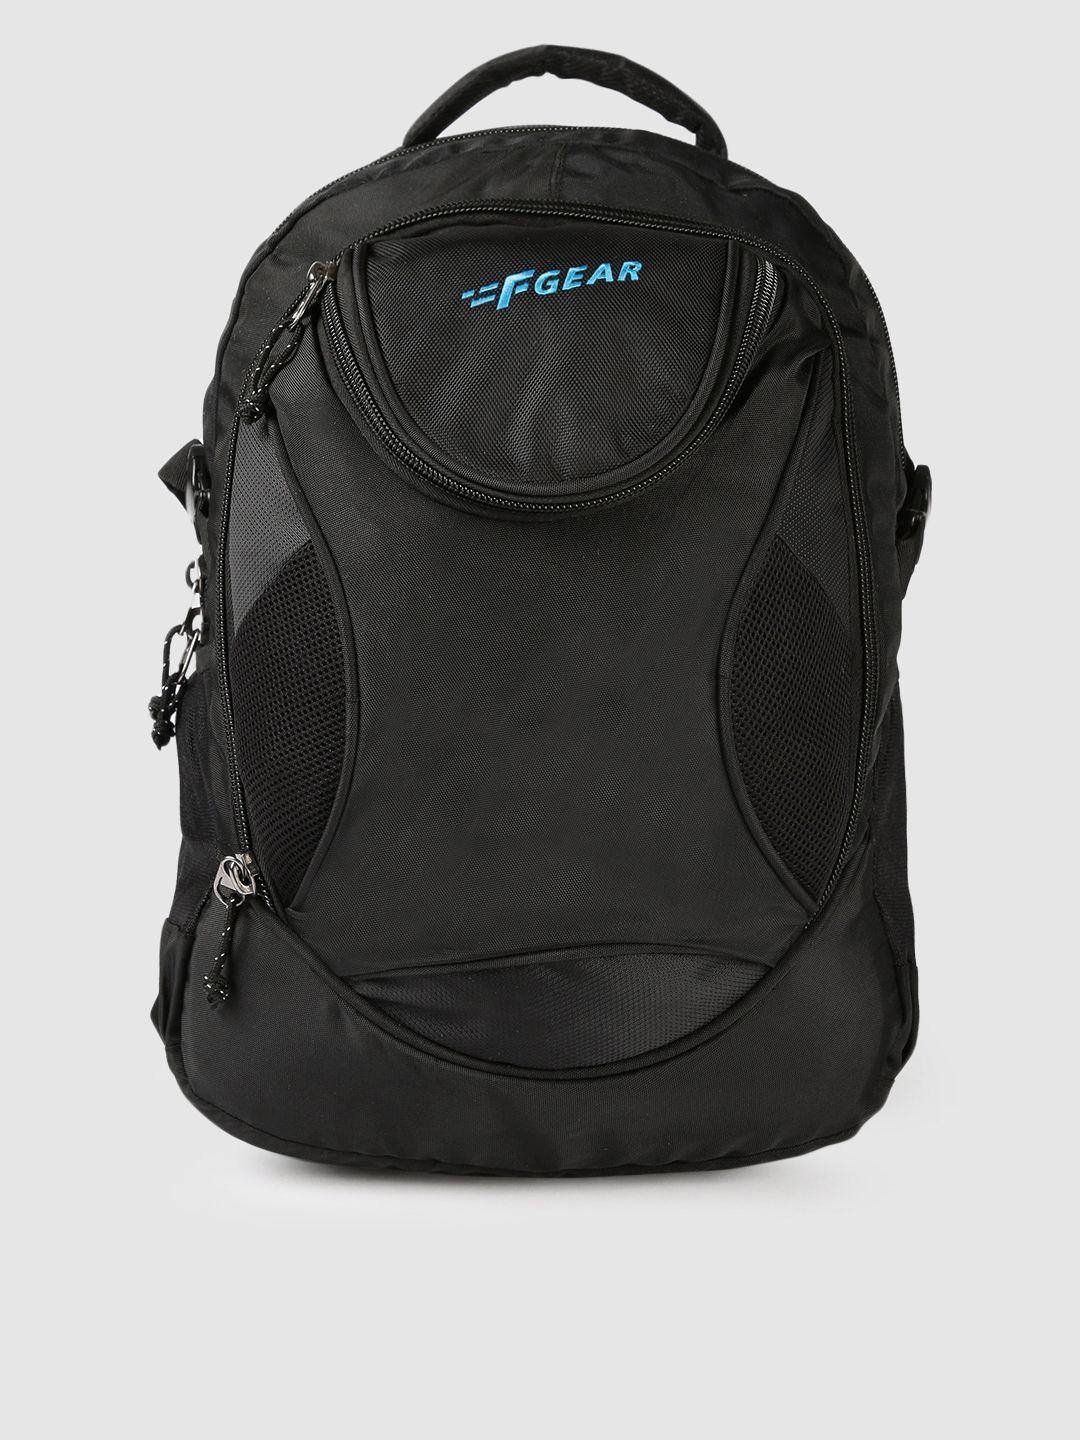 f gear unisex black solid sniper lite v2 backpack